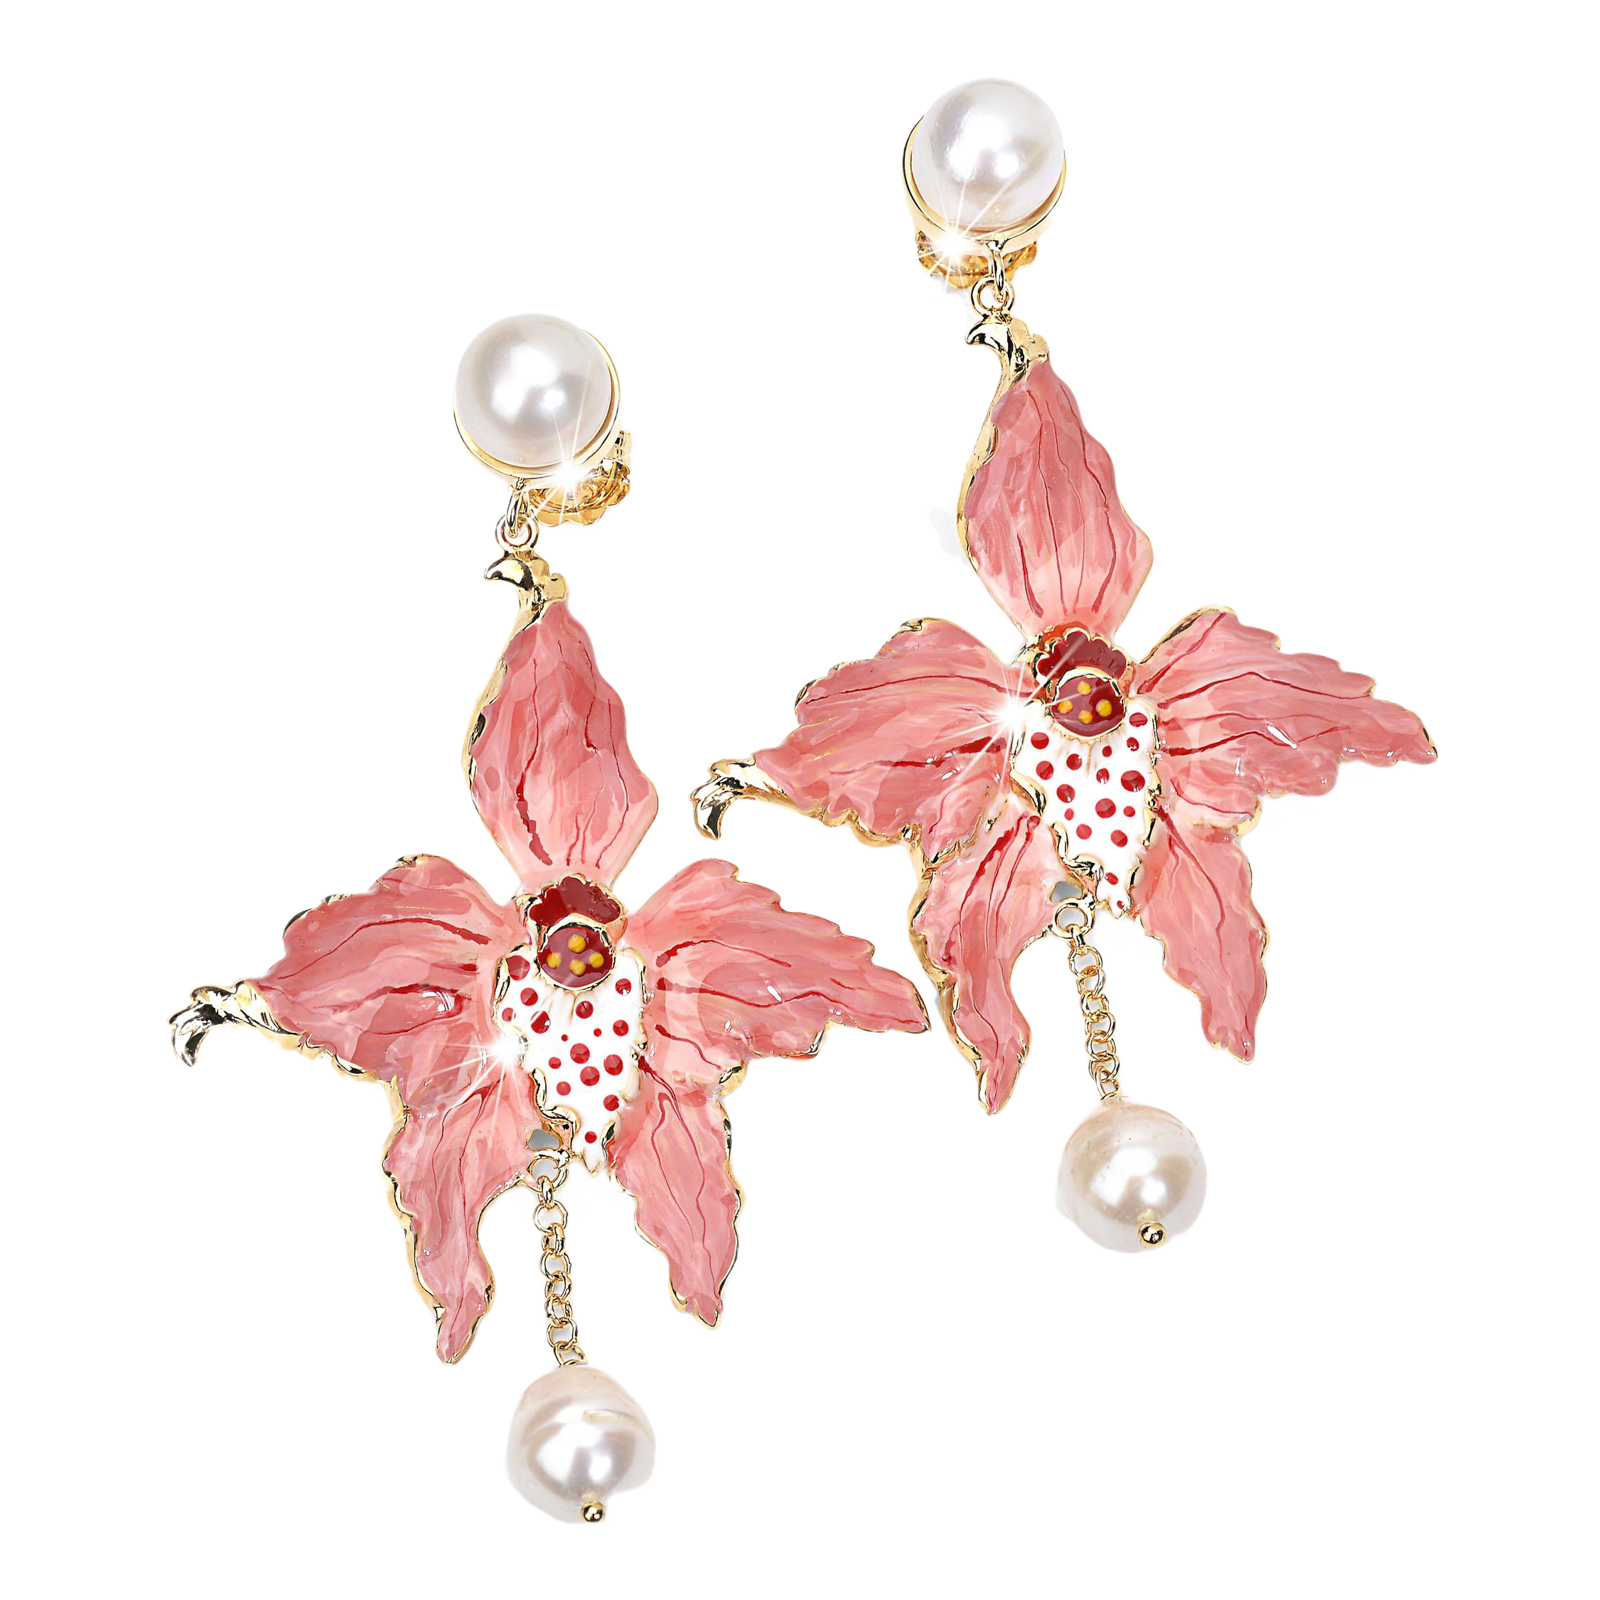 Orecchini orchidea con al lobo e pendente perle barocche color rosa salmone sfumature rosso e bianco